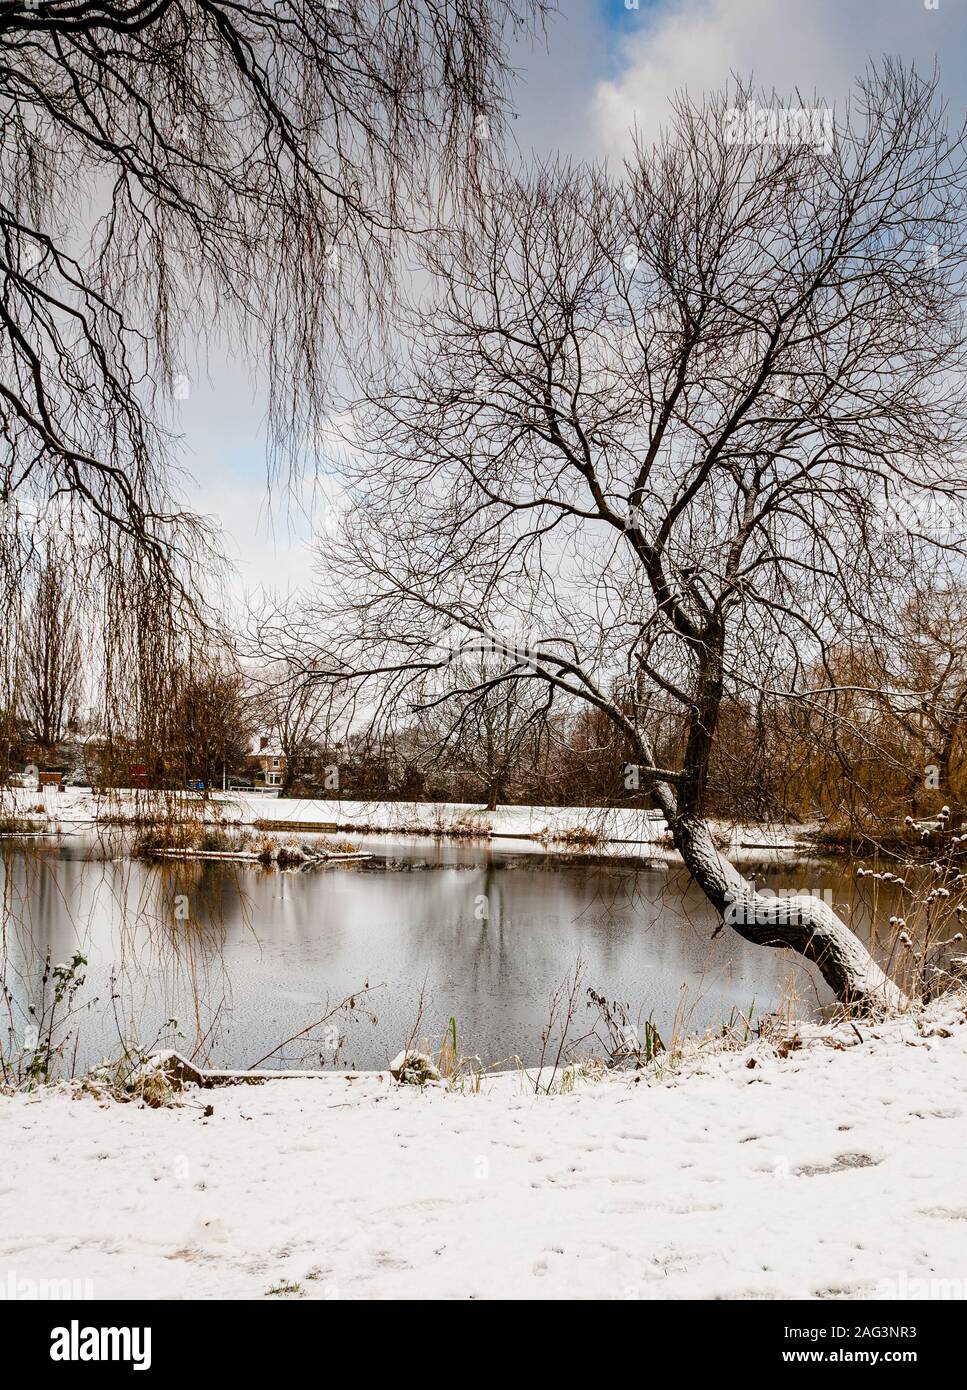 Una fredda mattina visita alla mia zona naturale locale a Billingham, Charltons Pond. Parzialmente congelato e molto freddo. Foto Stock